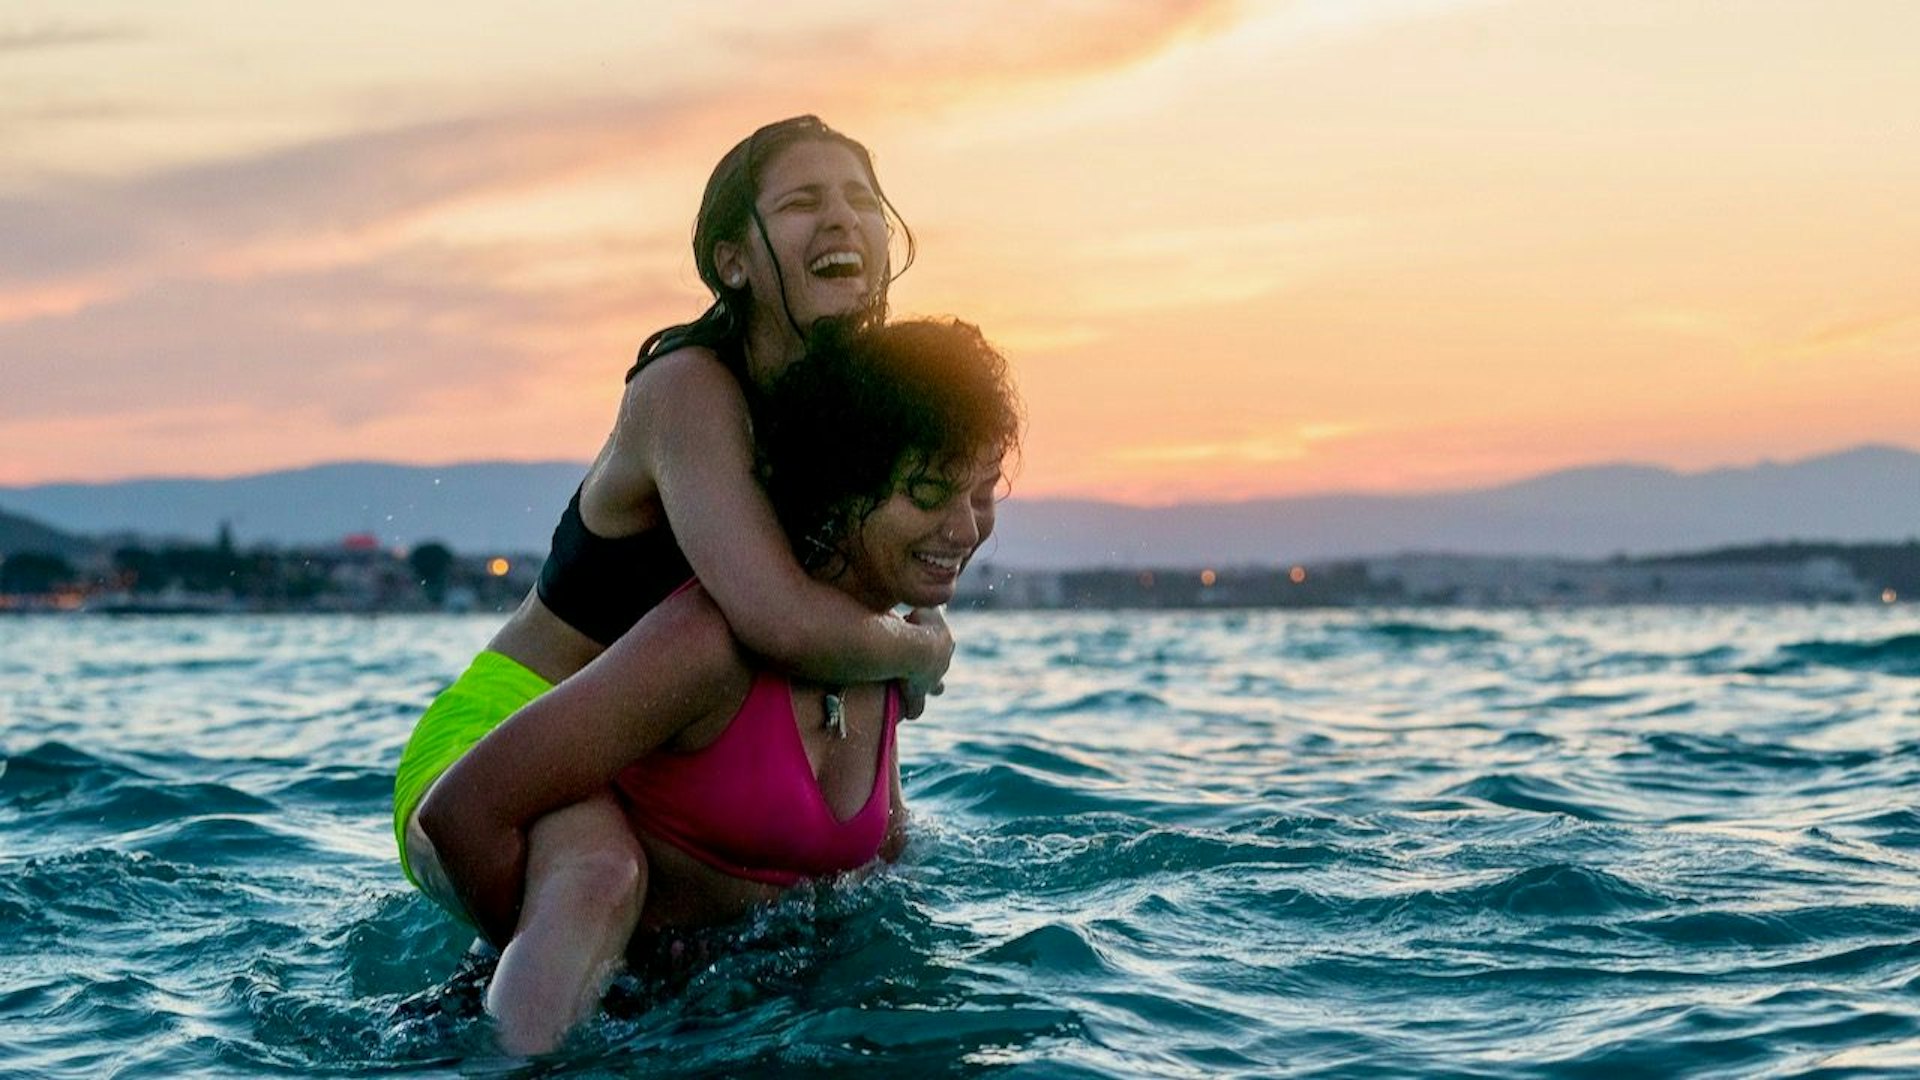 Sally El Hosainis Drama "The Swimmers" eröffnet das 18. Zurich Film Festival